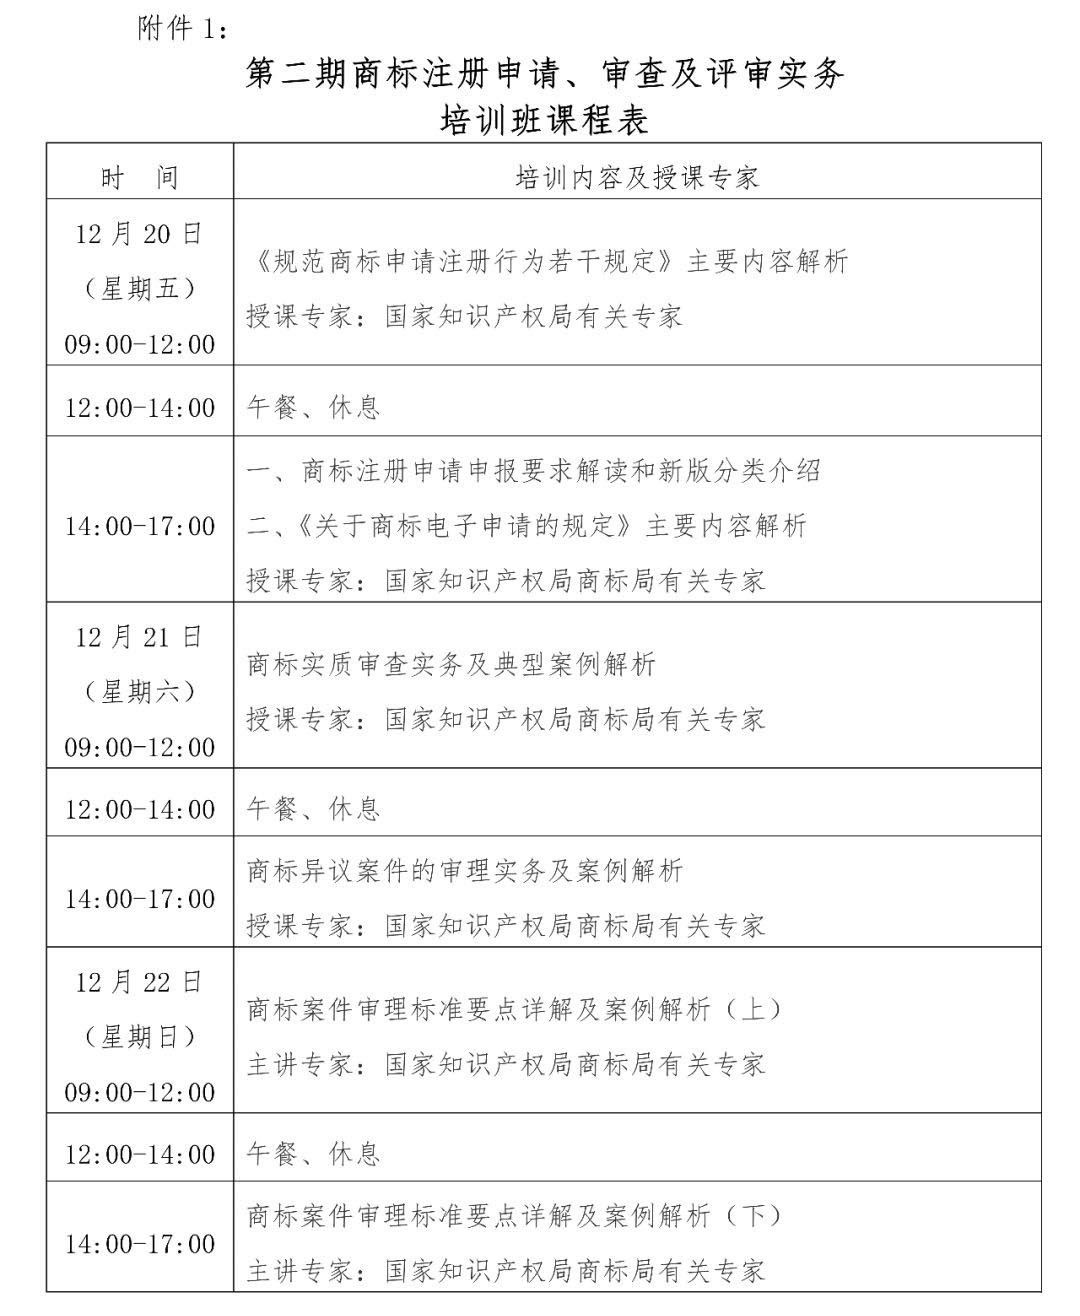 报名丨商标注册申请、审查及评审实务培训班「2019.12.20-22日上海市」